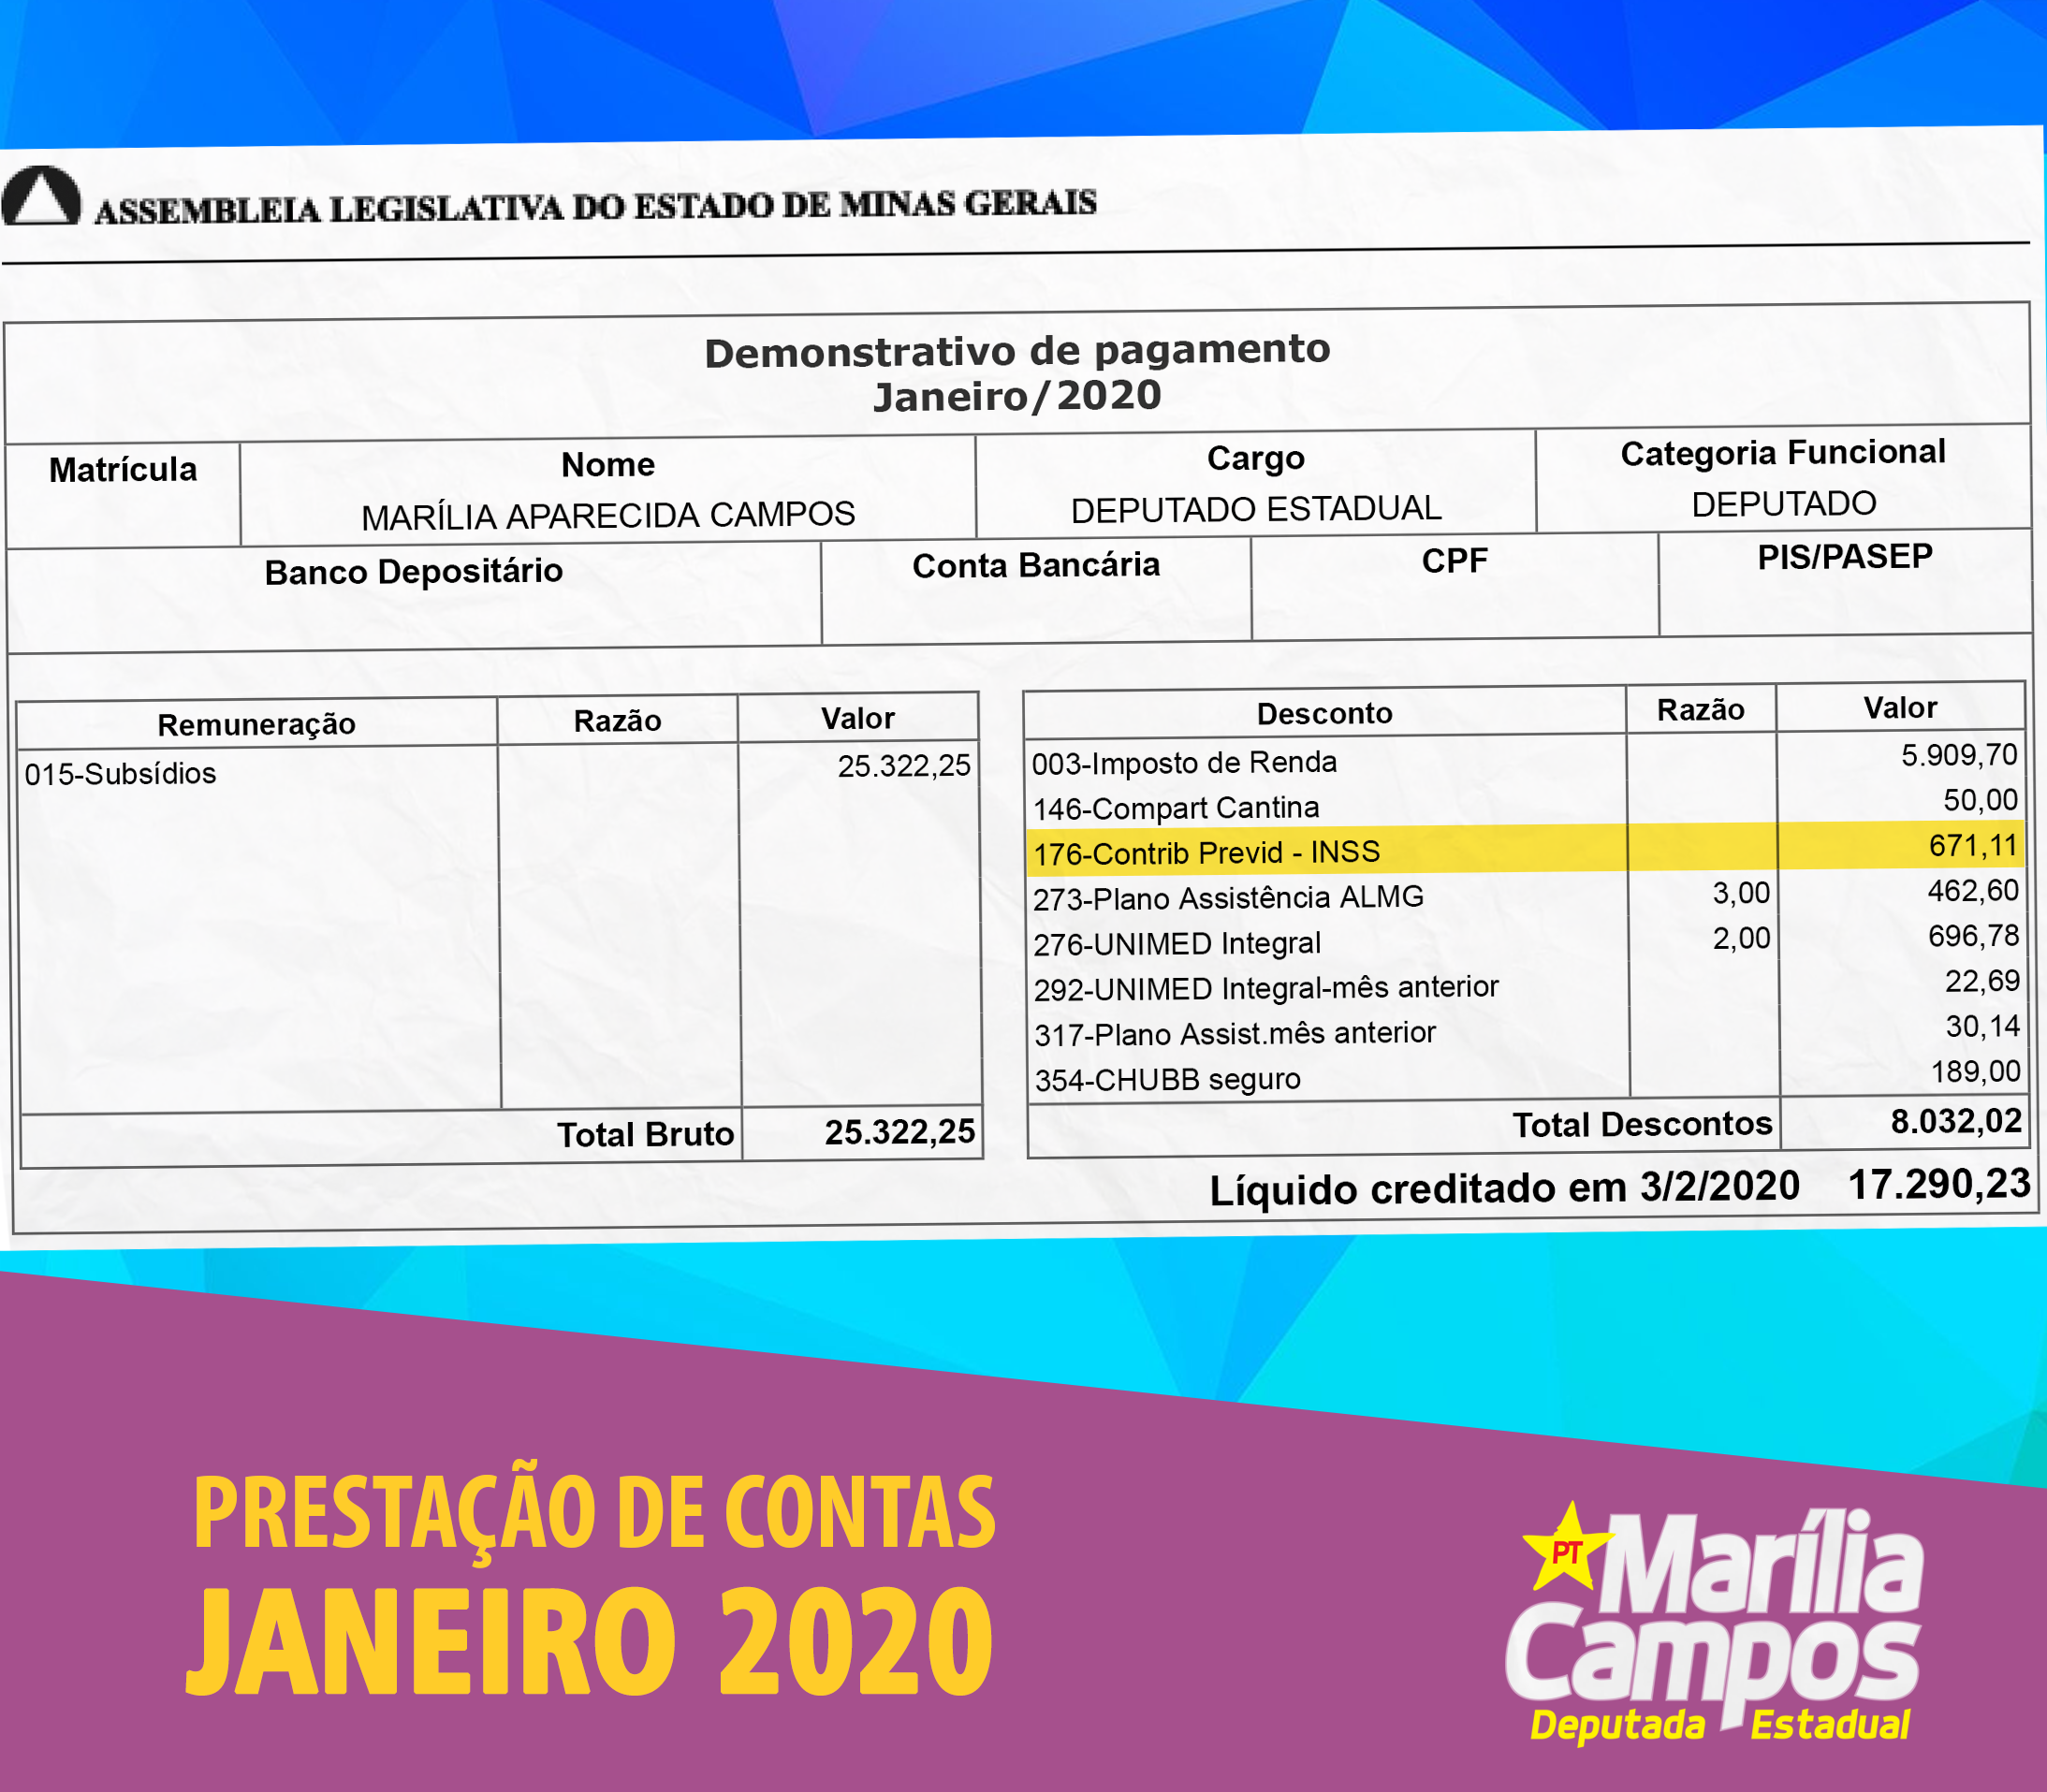 PRESTAÇÃO_DE_CONTAS_JANEIRO_2020-2.png (1.66 MB)